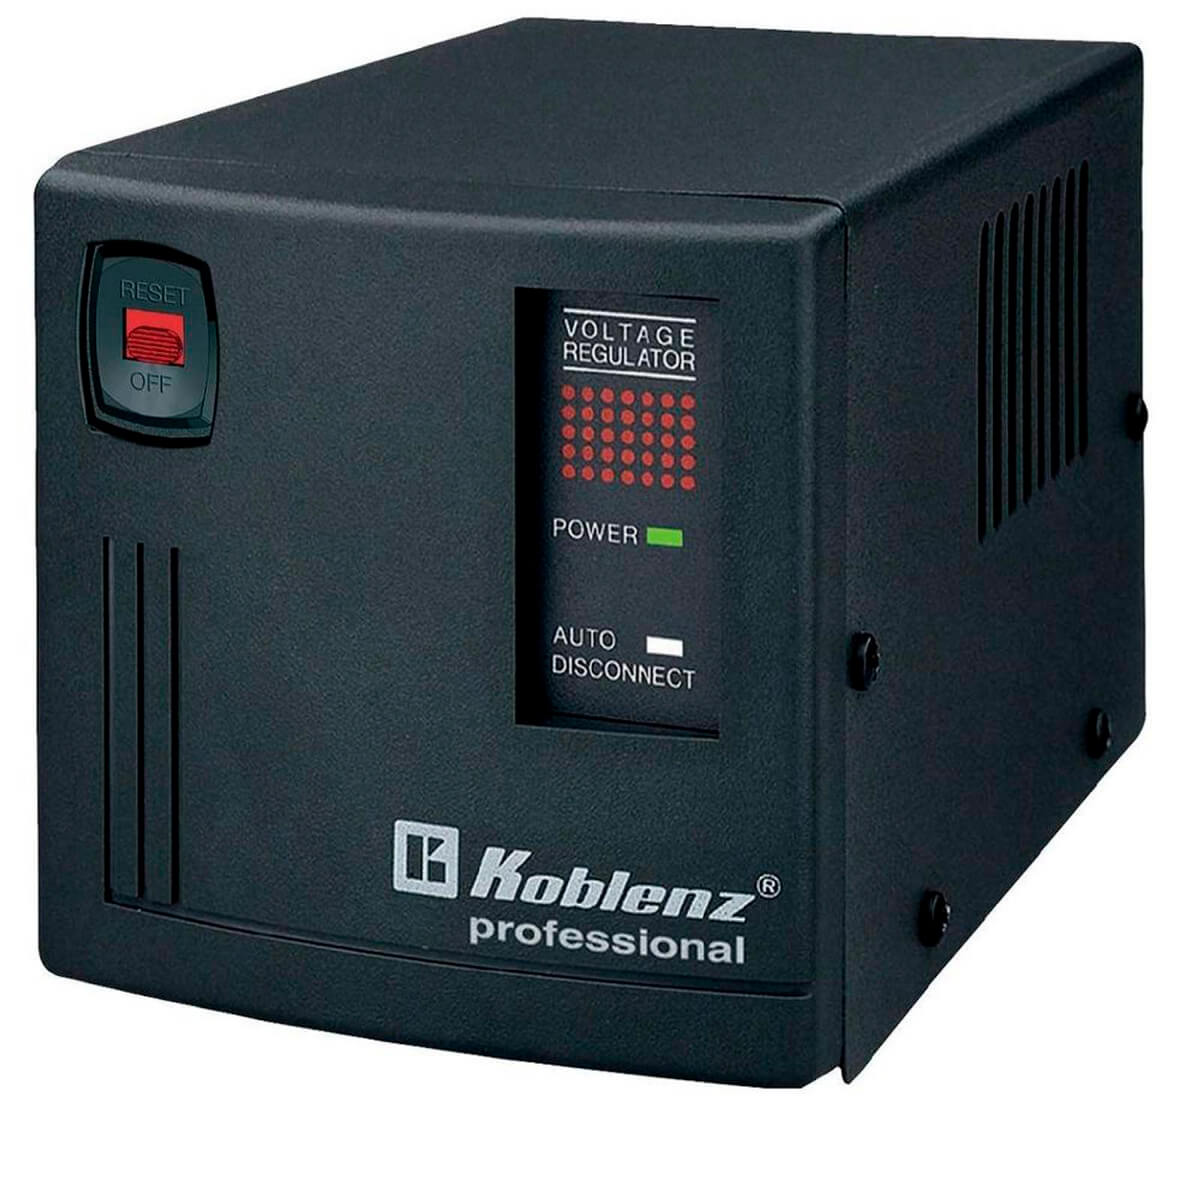 Regulador de Voltaje Koblenz ER2550 Negro